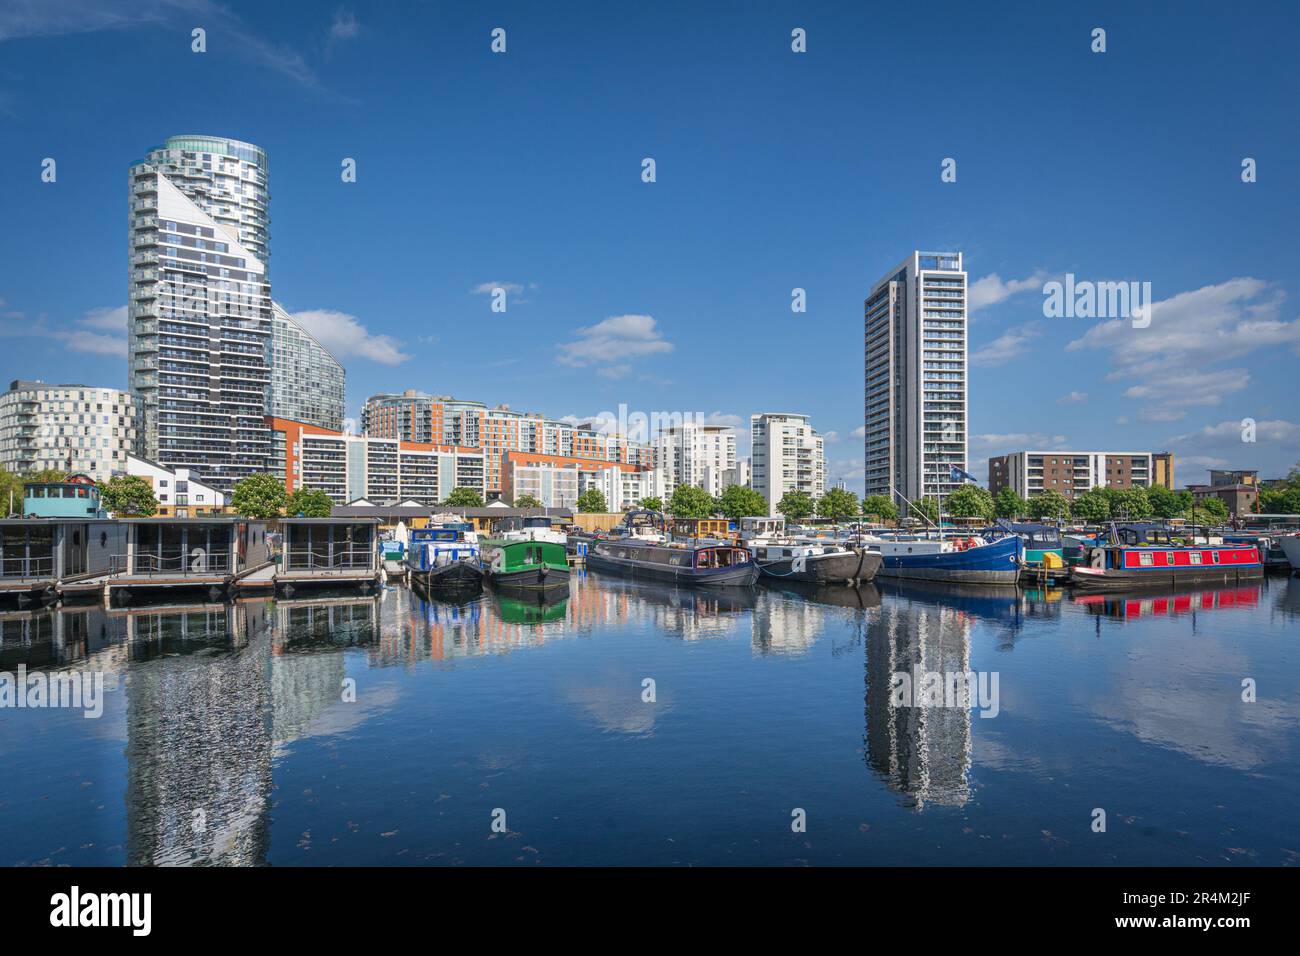 Poplar Dock marina in Canary wharf London Stock Photo